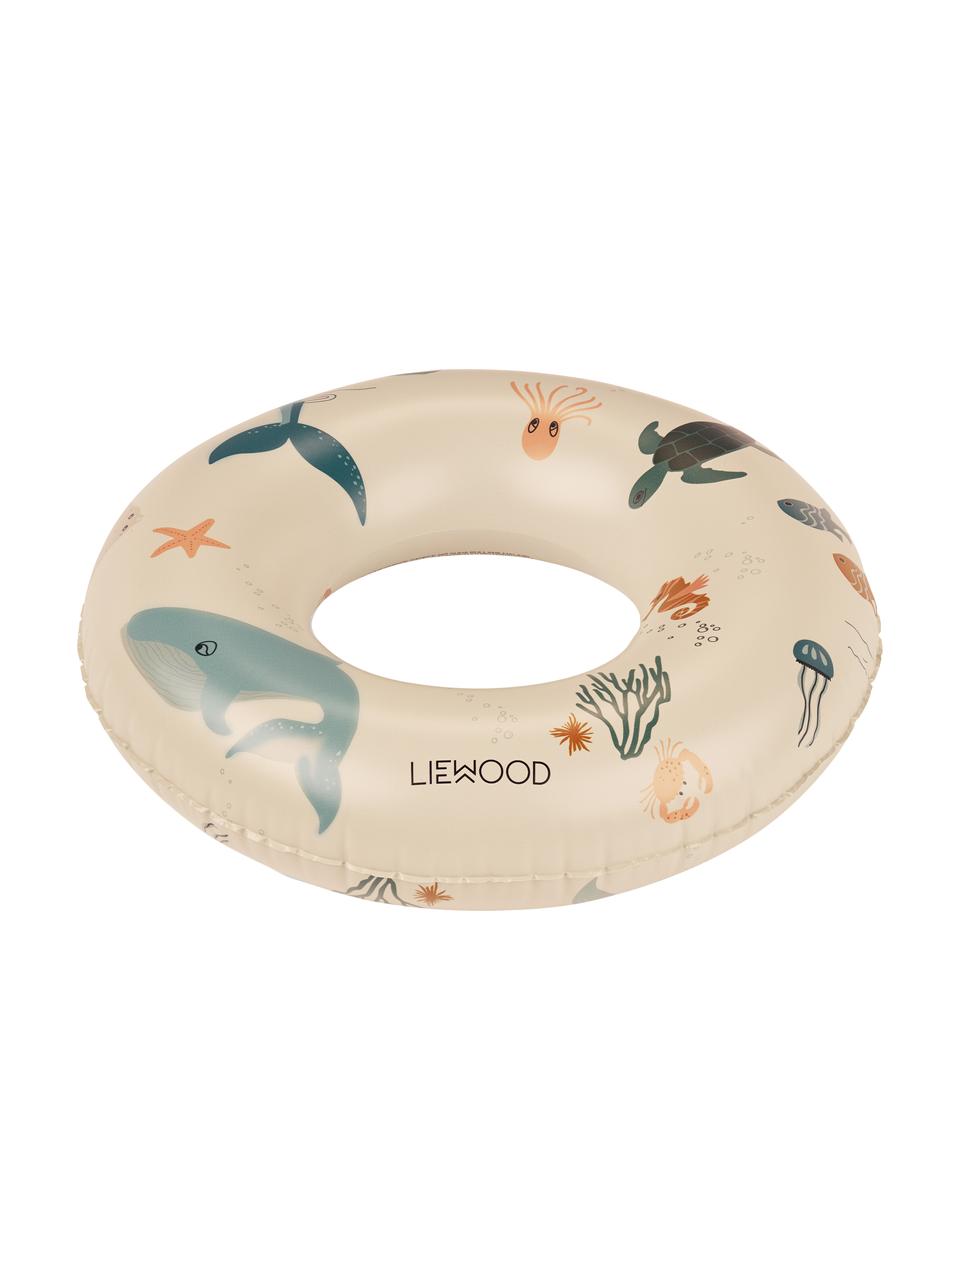 Flotador infantil Baloo, 100% plástico (PVC), Beige, multicolor (estampado de animales marinos), Ø 45 cm